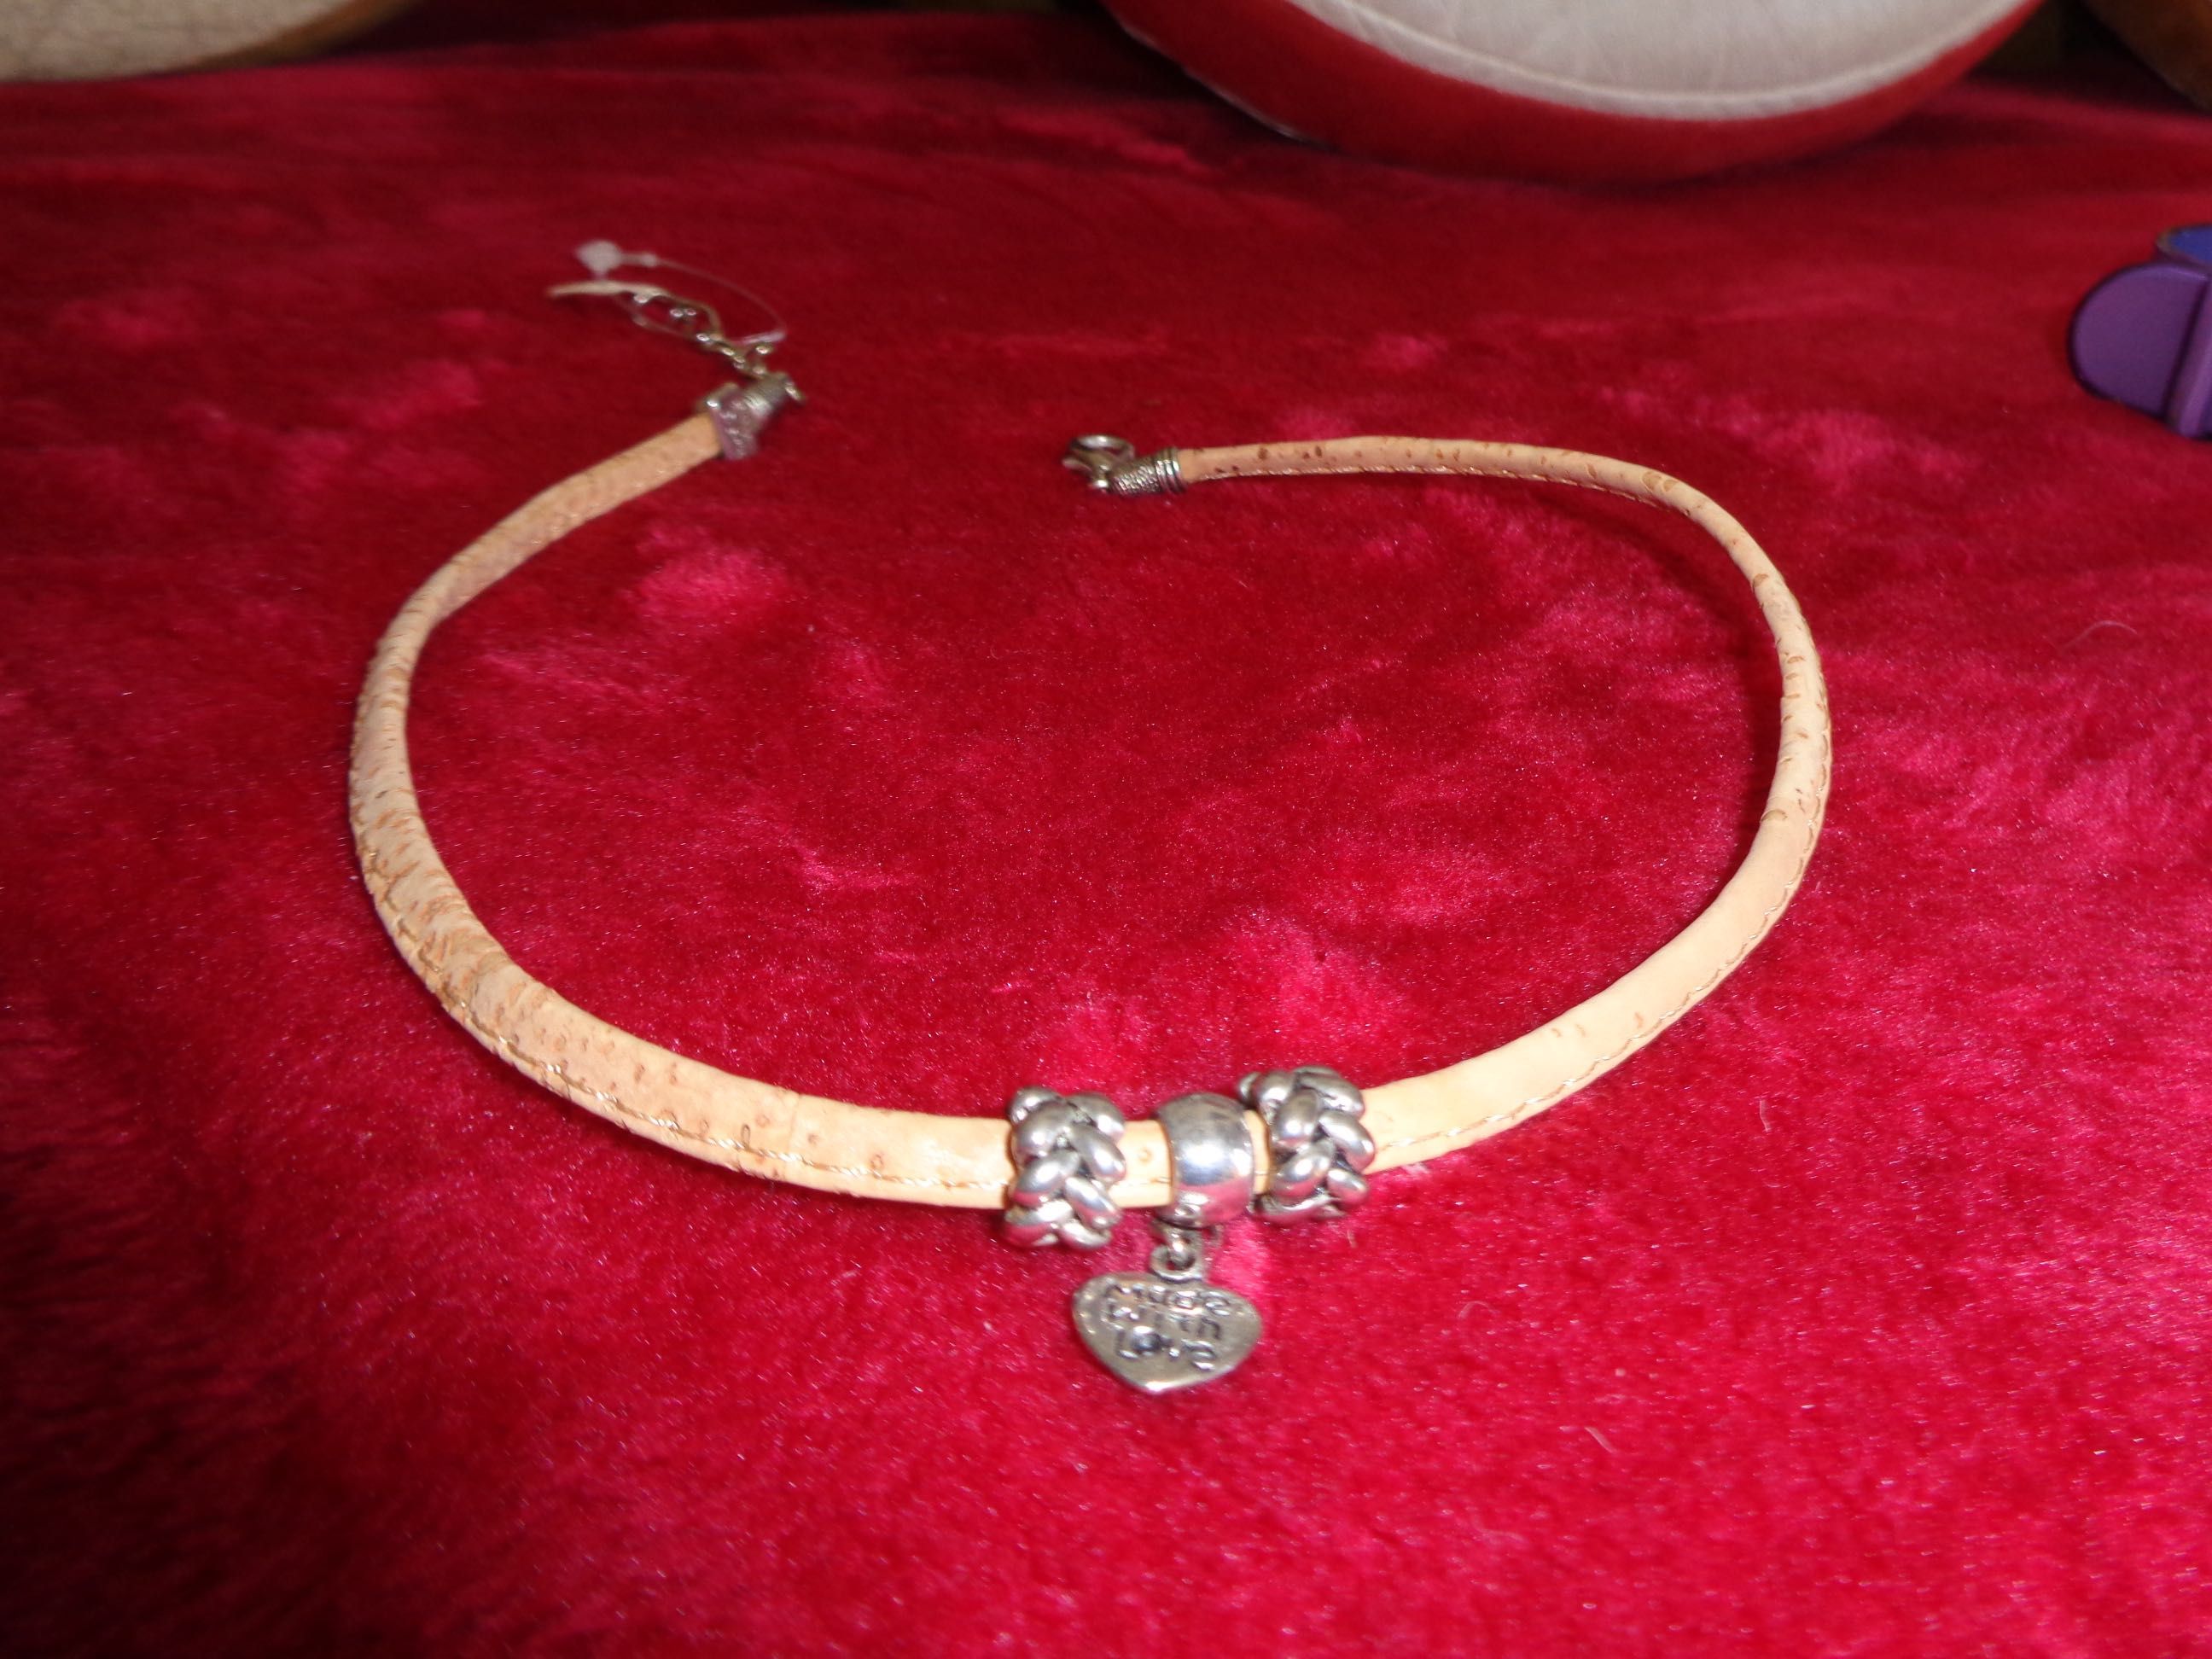 Bijutaria várias combinações de colares e pulseiras